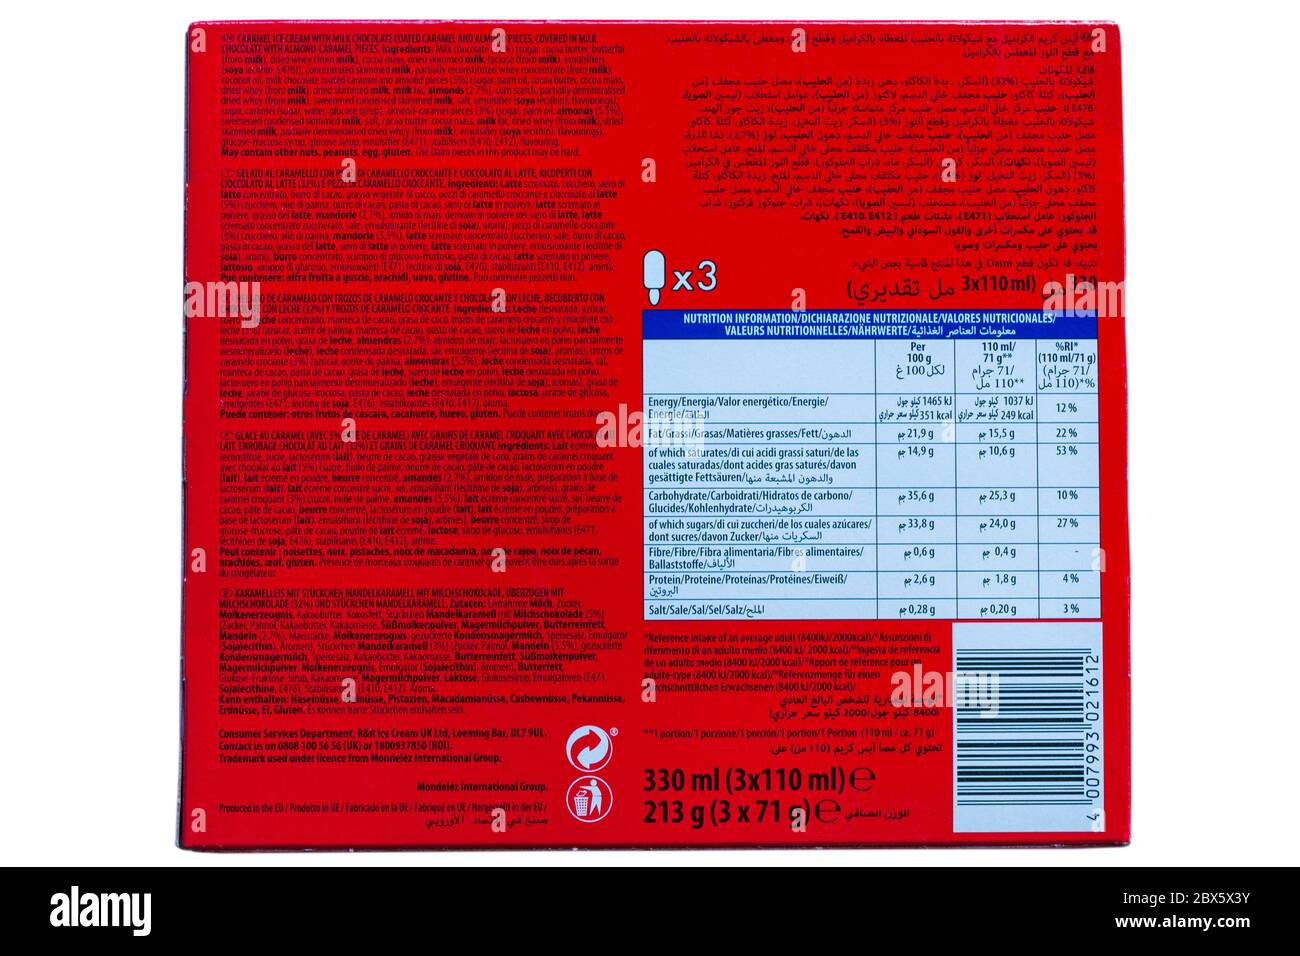 Inhaltsstofflisten, Nährwertangaben und Allergieberatung Informationen auf Box von Daim Eis in vielen verschiedenen Sprachen mehrsprachig - UK Stockfoto